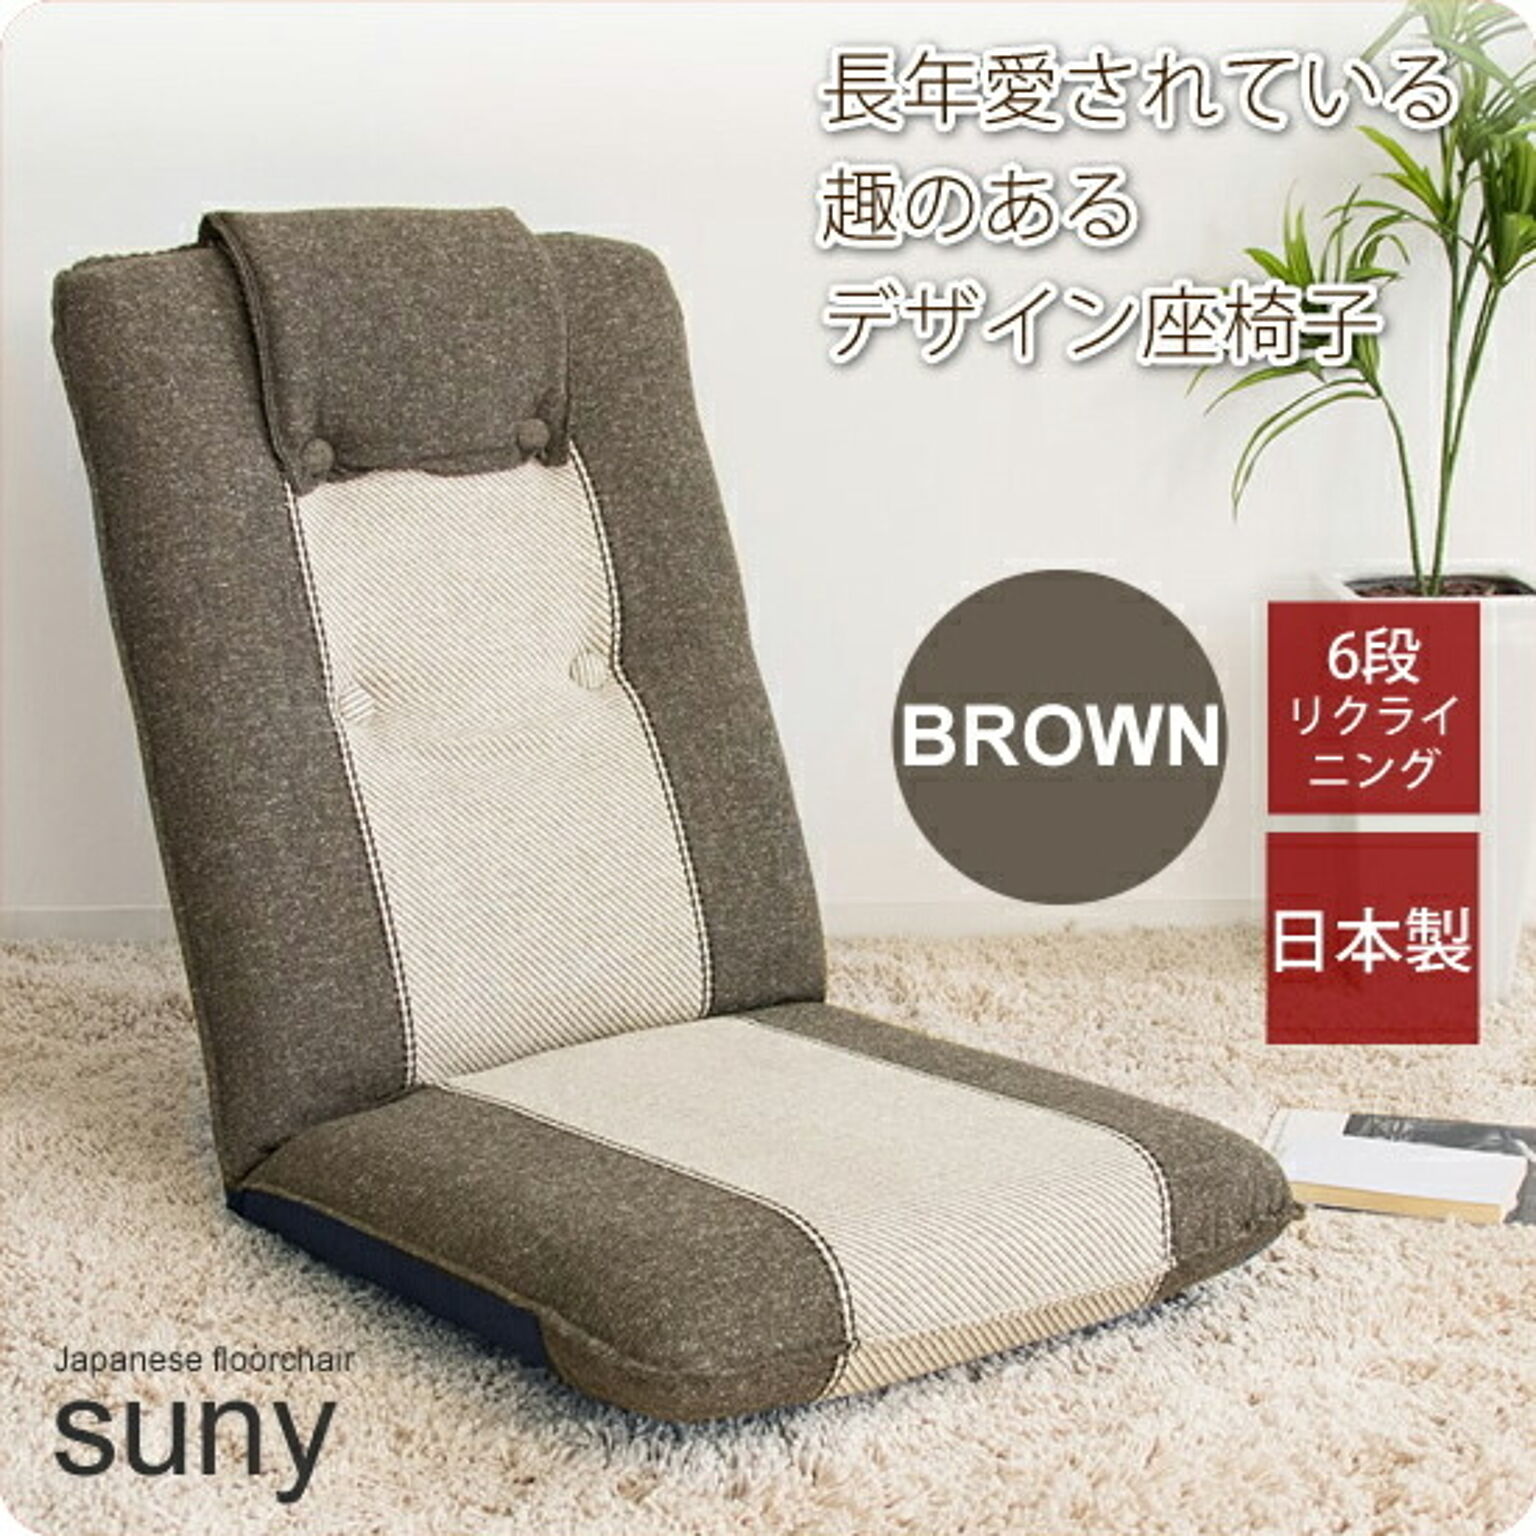 Suny リクライニング座椅子 ファブリック ブラウン